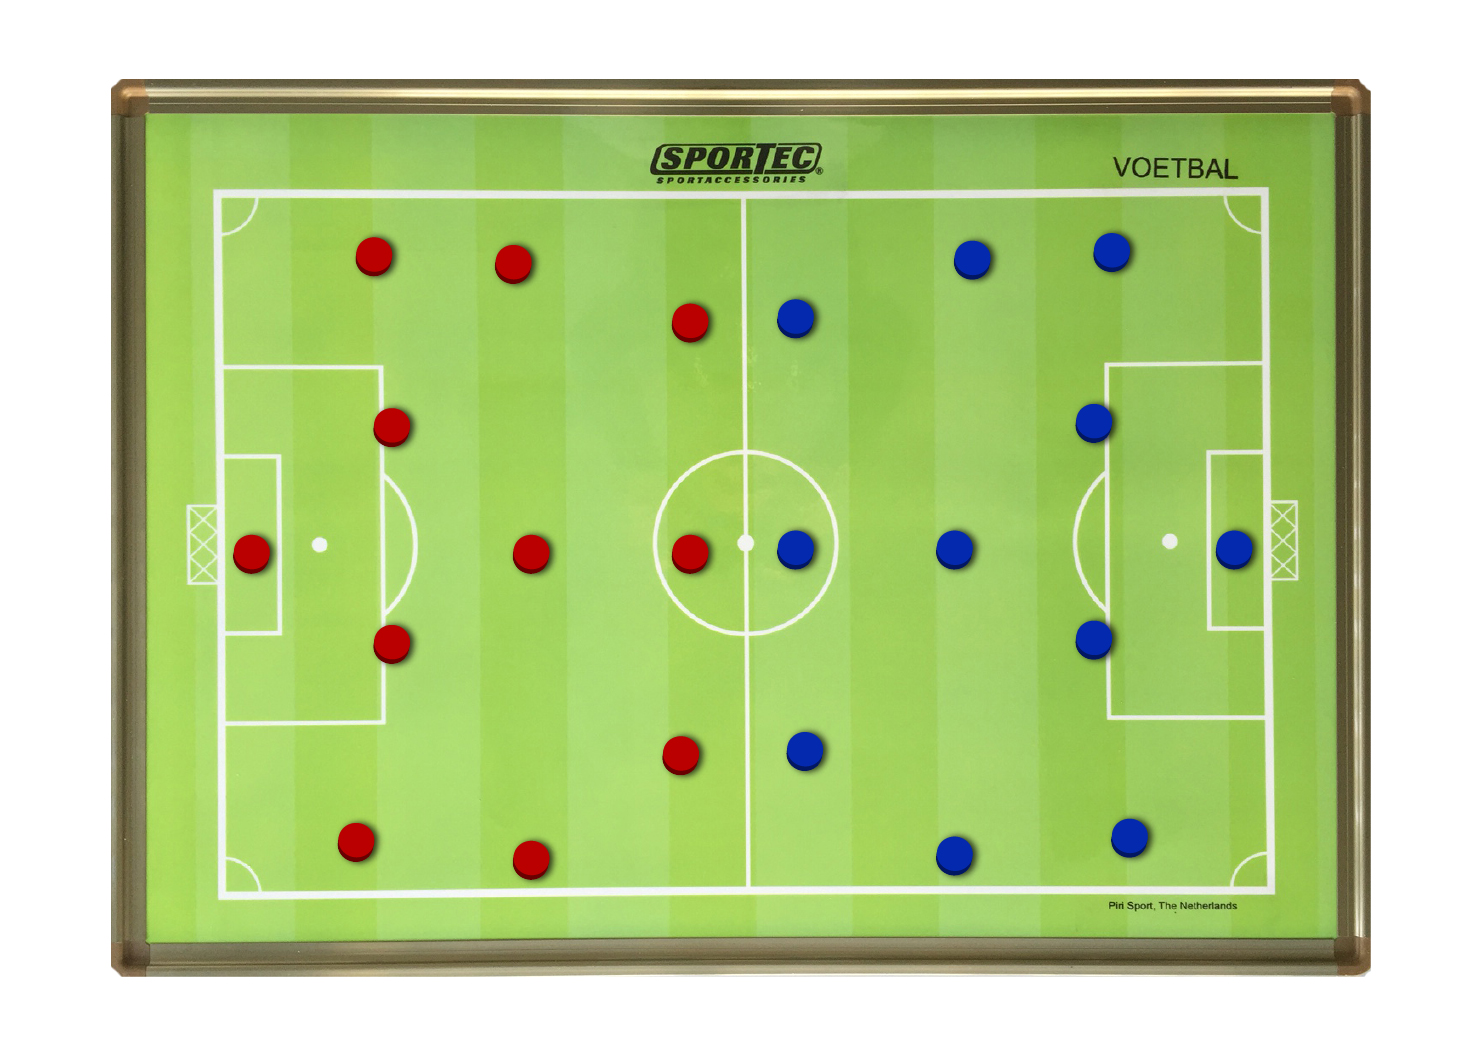 60 x 45 - Magnetisch coachbord voetbal - sportartikelen